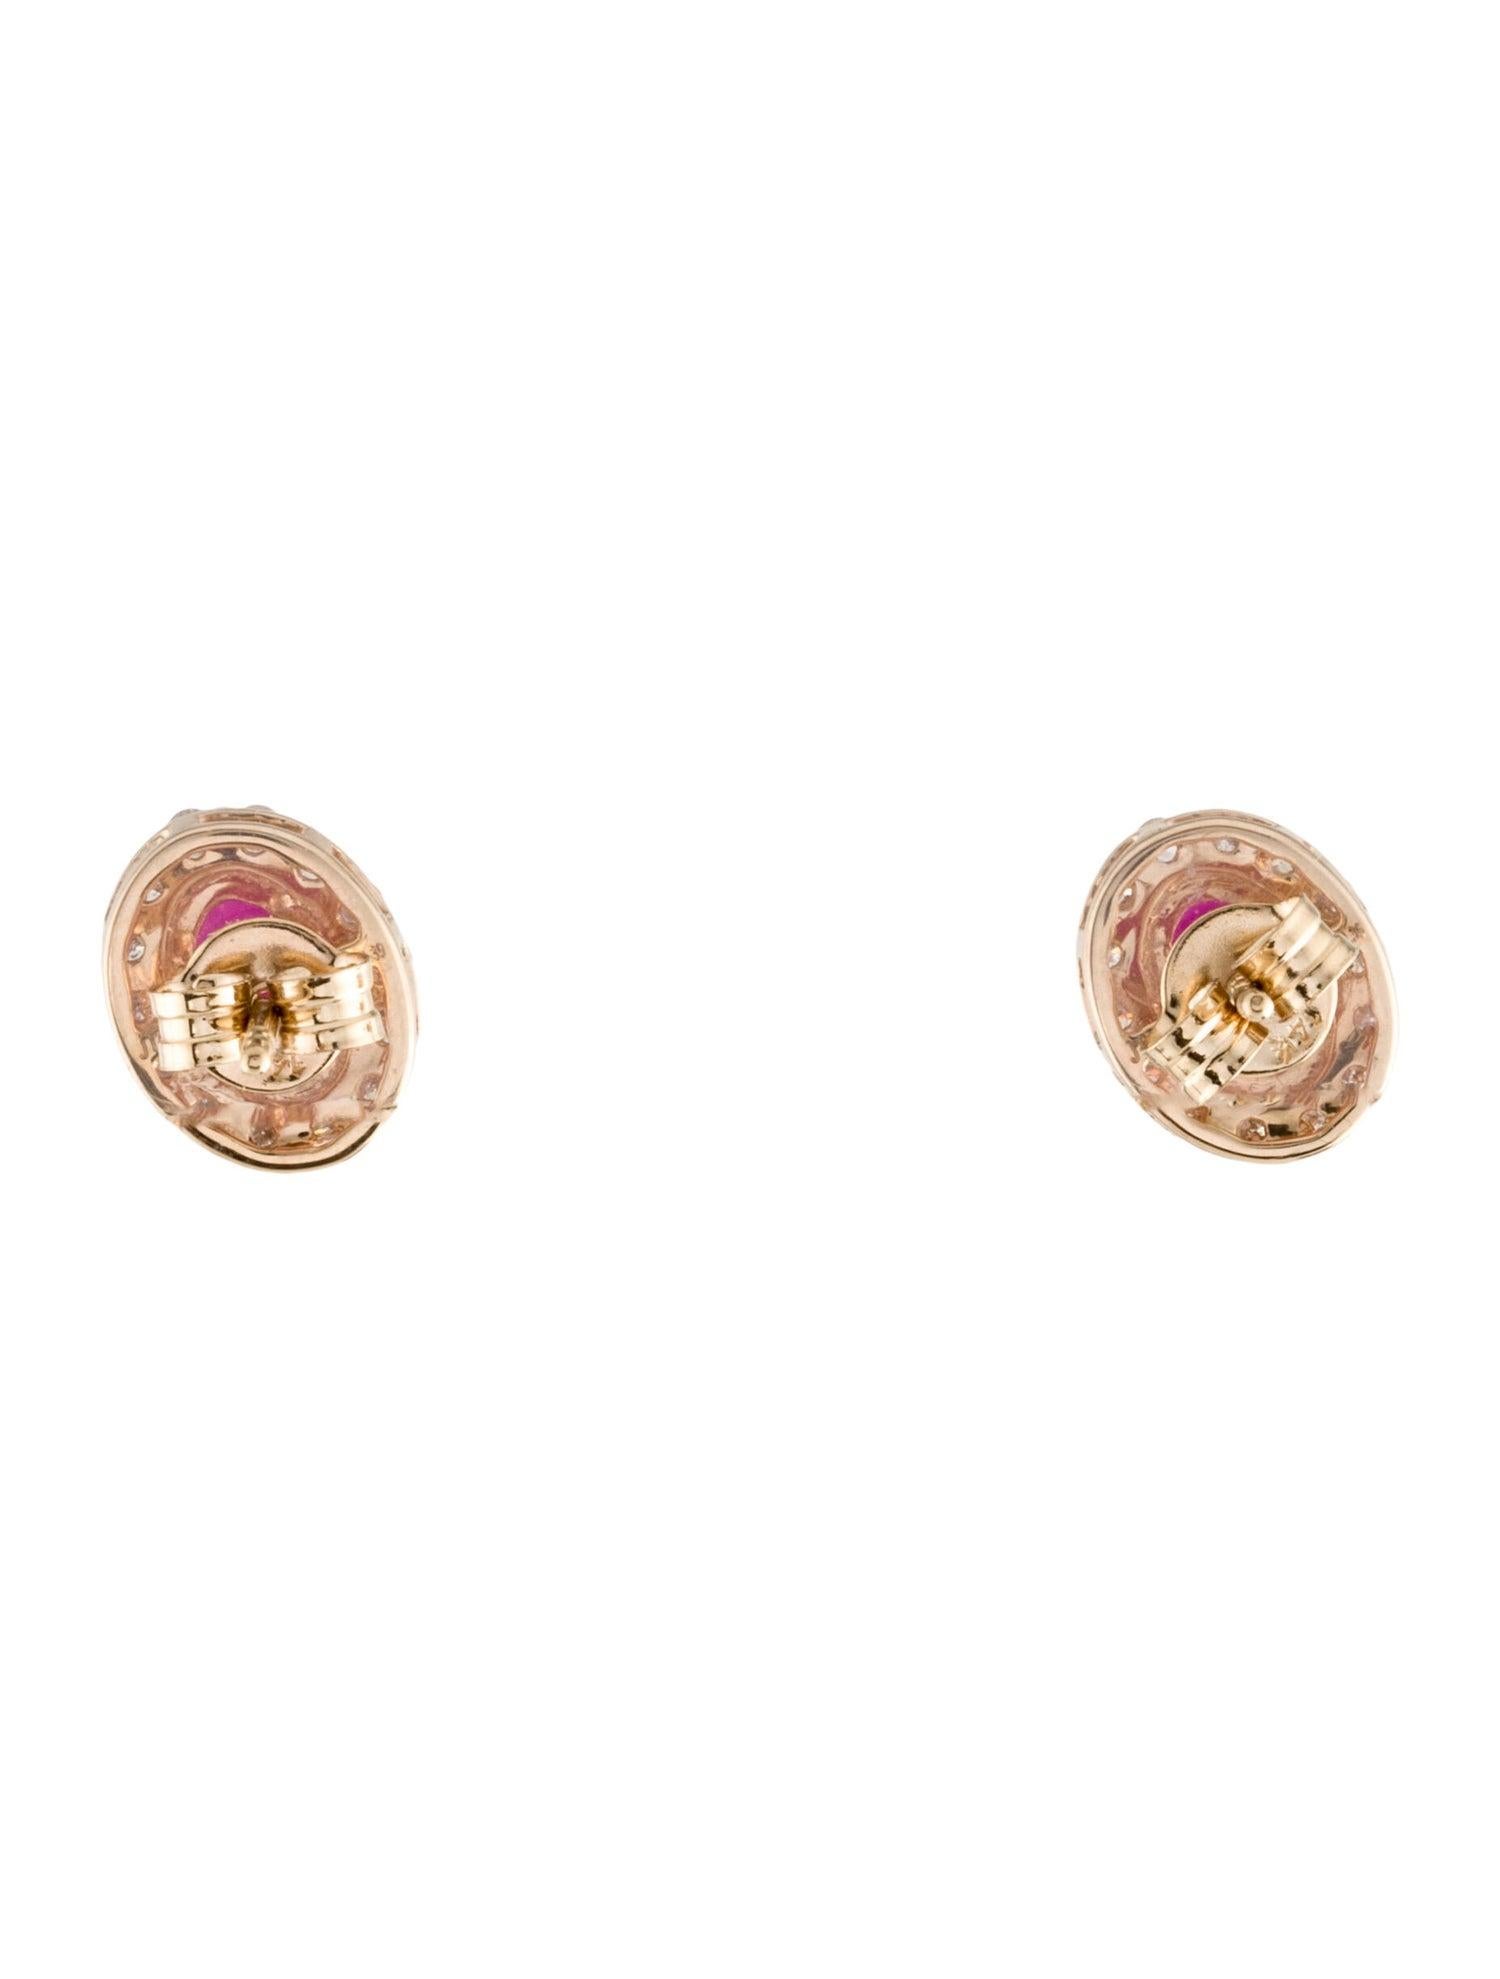 Women's 14K Ruby & Diamond Stud Earrings - Elegant Gemstone Jewelry, Timeless Sparkle For Sale